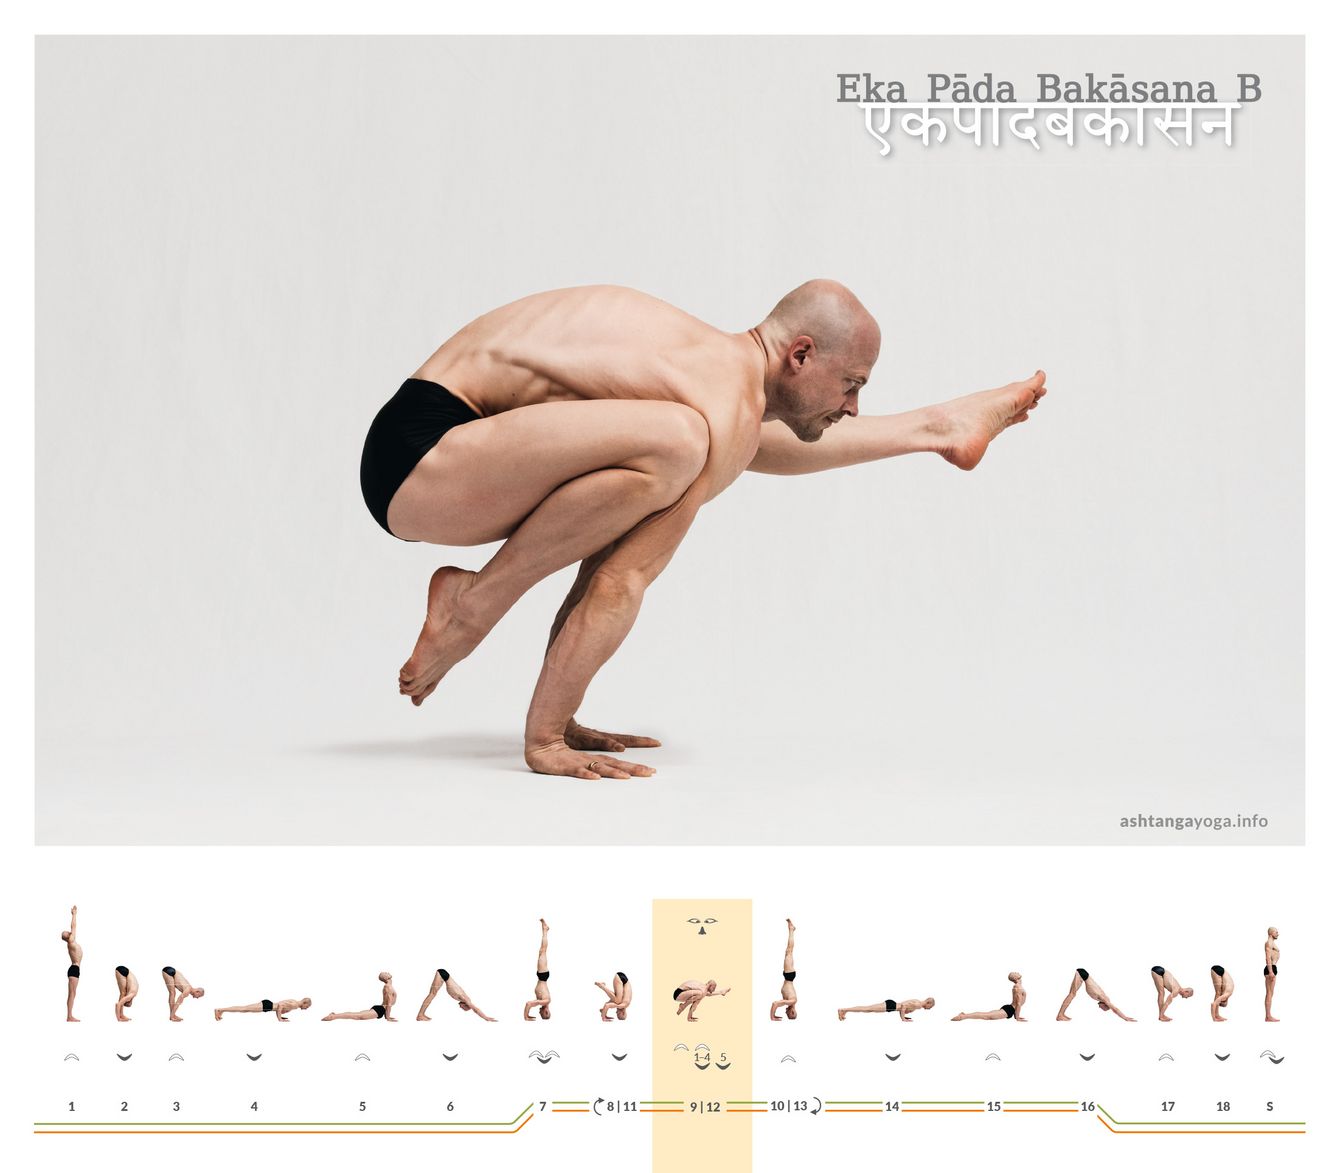 Eka Pada Bakasana, oder Einbeinige-Krähen-Haltung, ist in Variante B eine fortgeschrittene Yoga-Pose, die auf den Armen balanciert. Ein Knie ist auf dem Ellenbogen gestützt und dem anderen Bein nach vorne gestreckt.